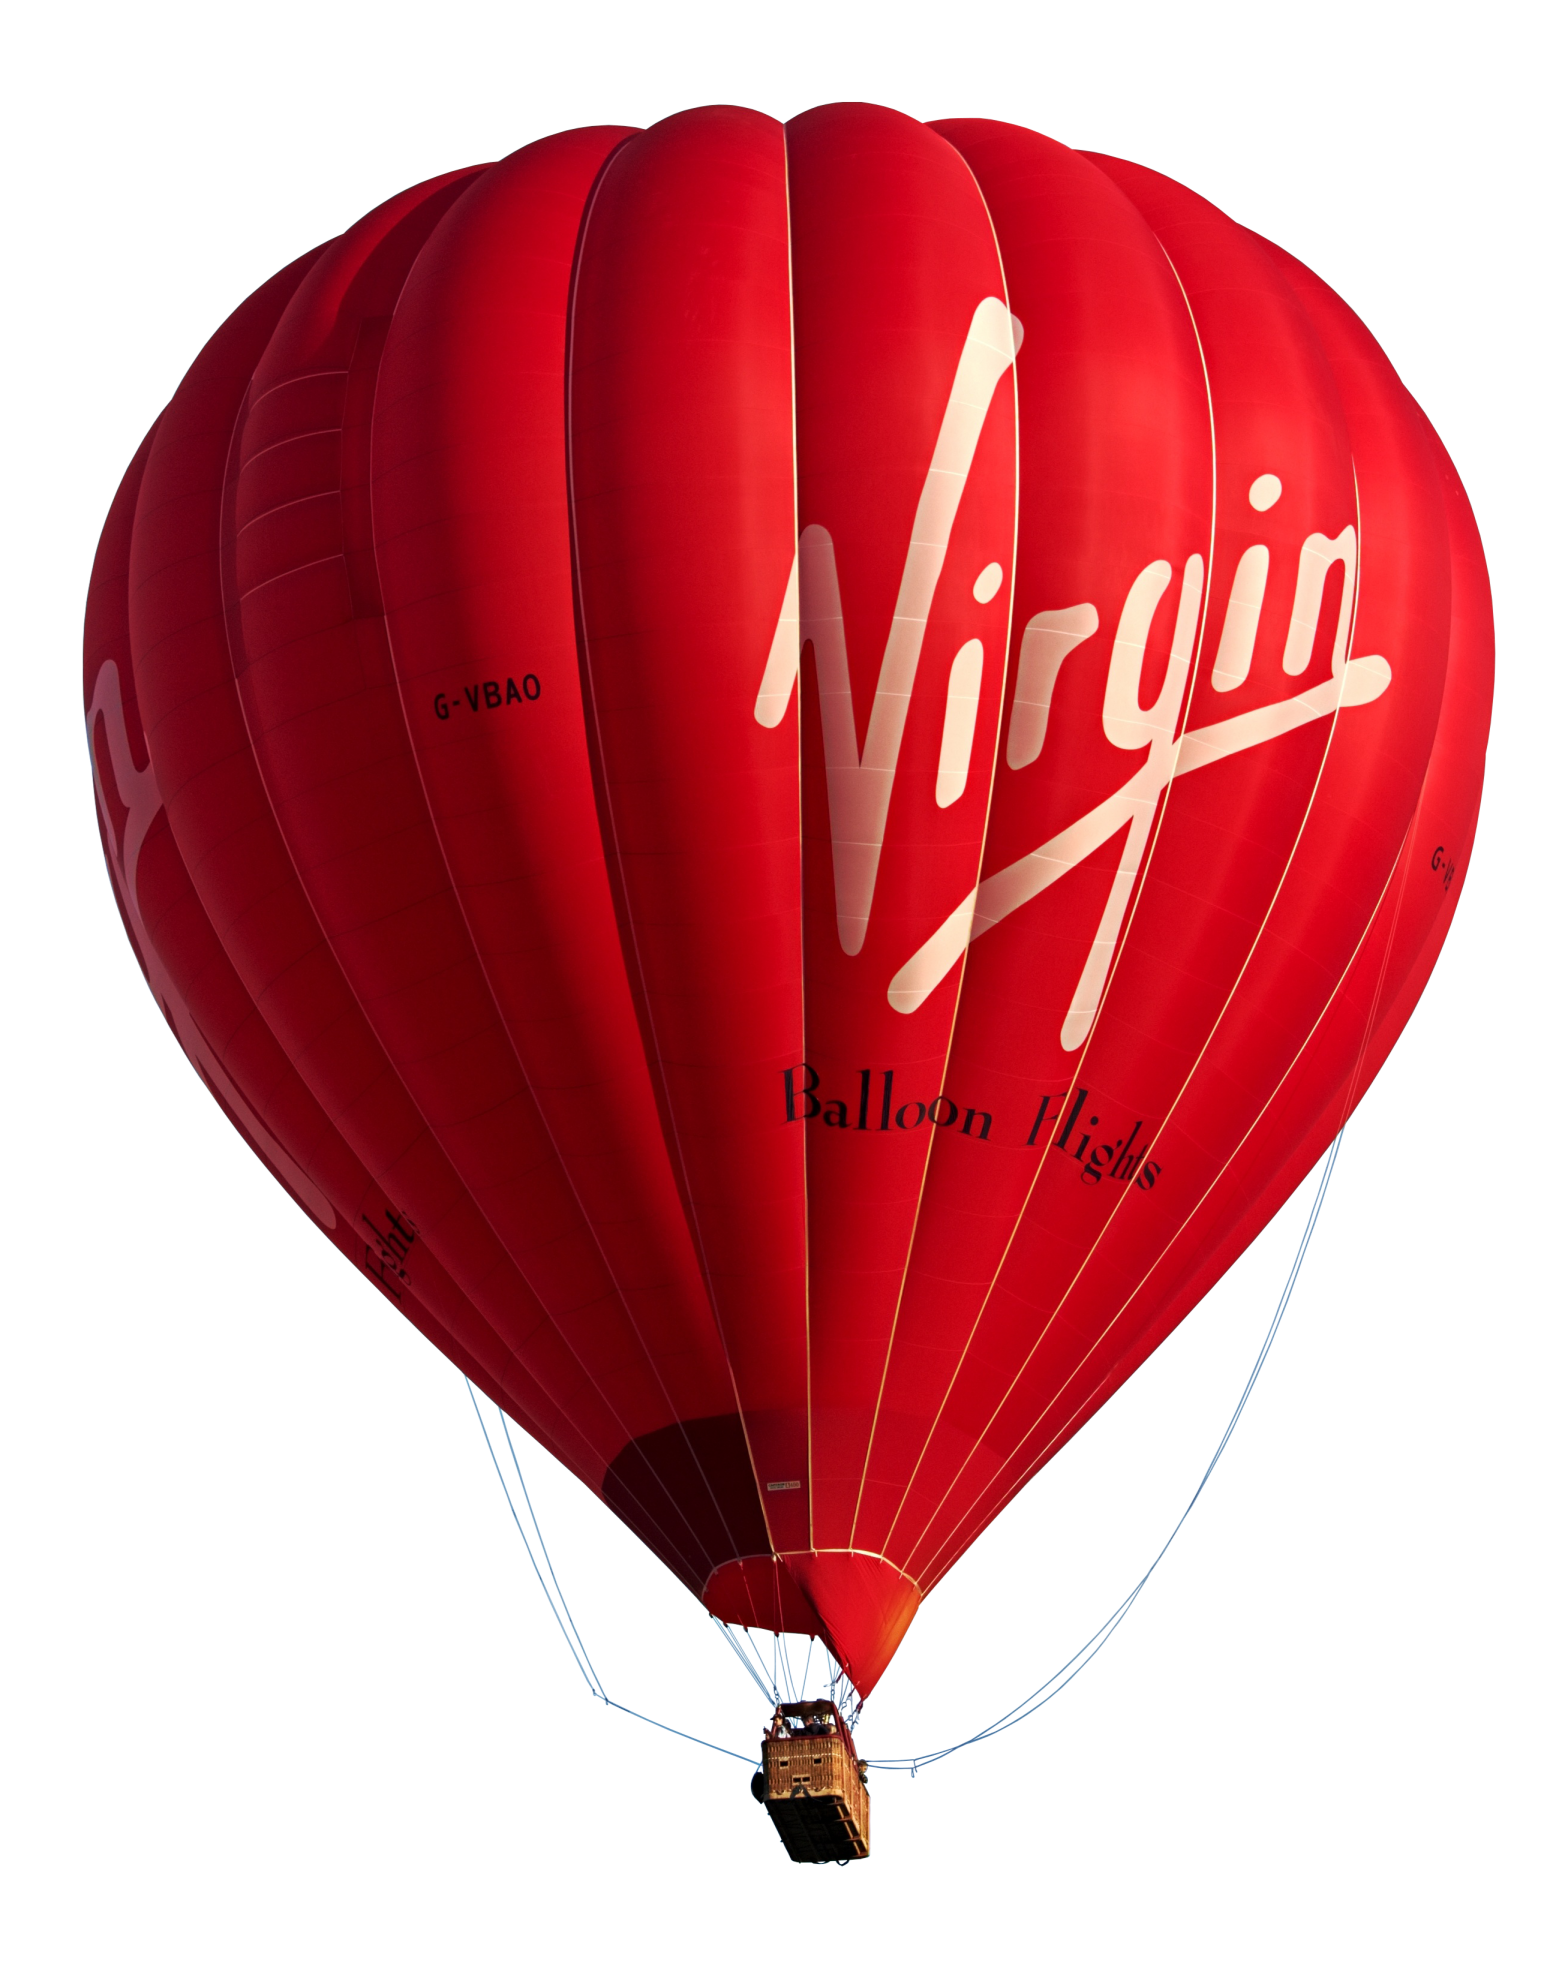 red hot-air balloon